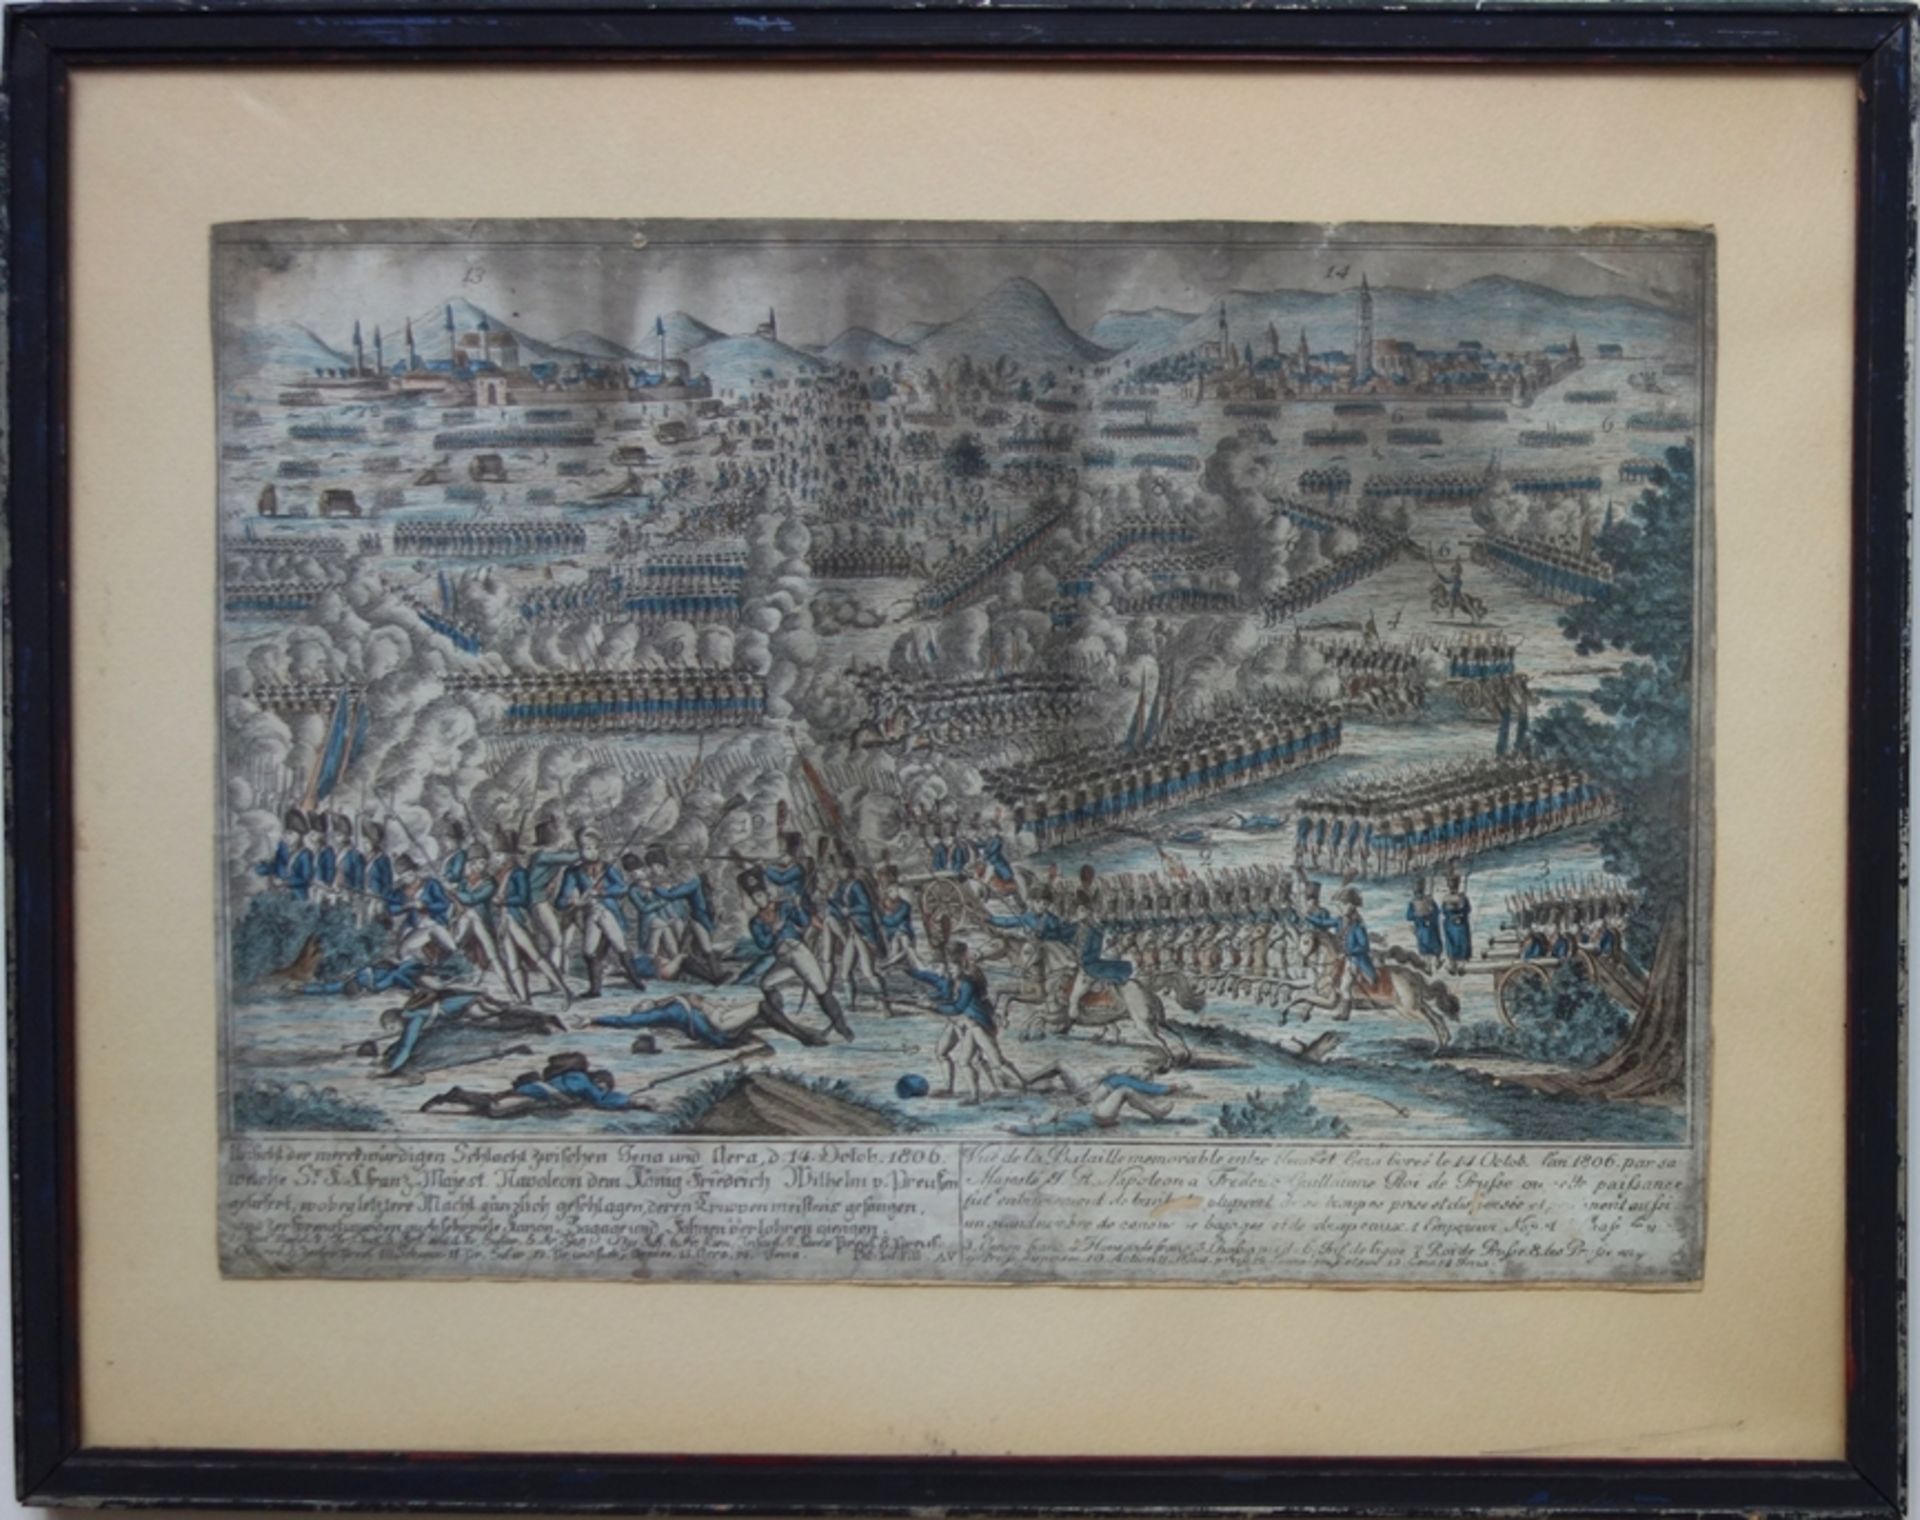 Historische Kupferstichkarte "Ansicht der merckwürdigen Schlacht zwischen Jena und Gera", 1806